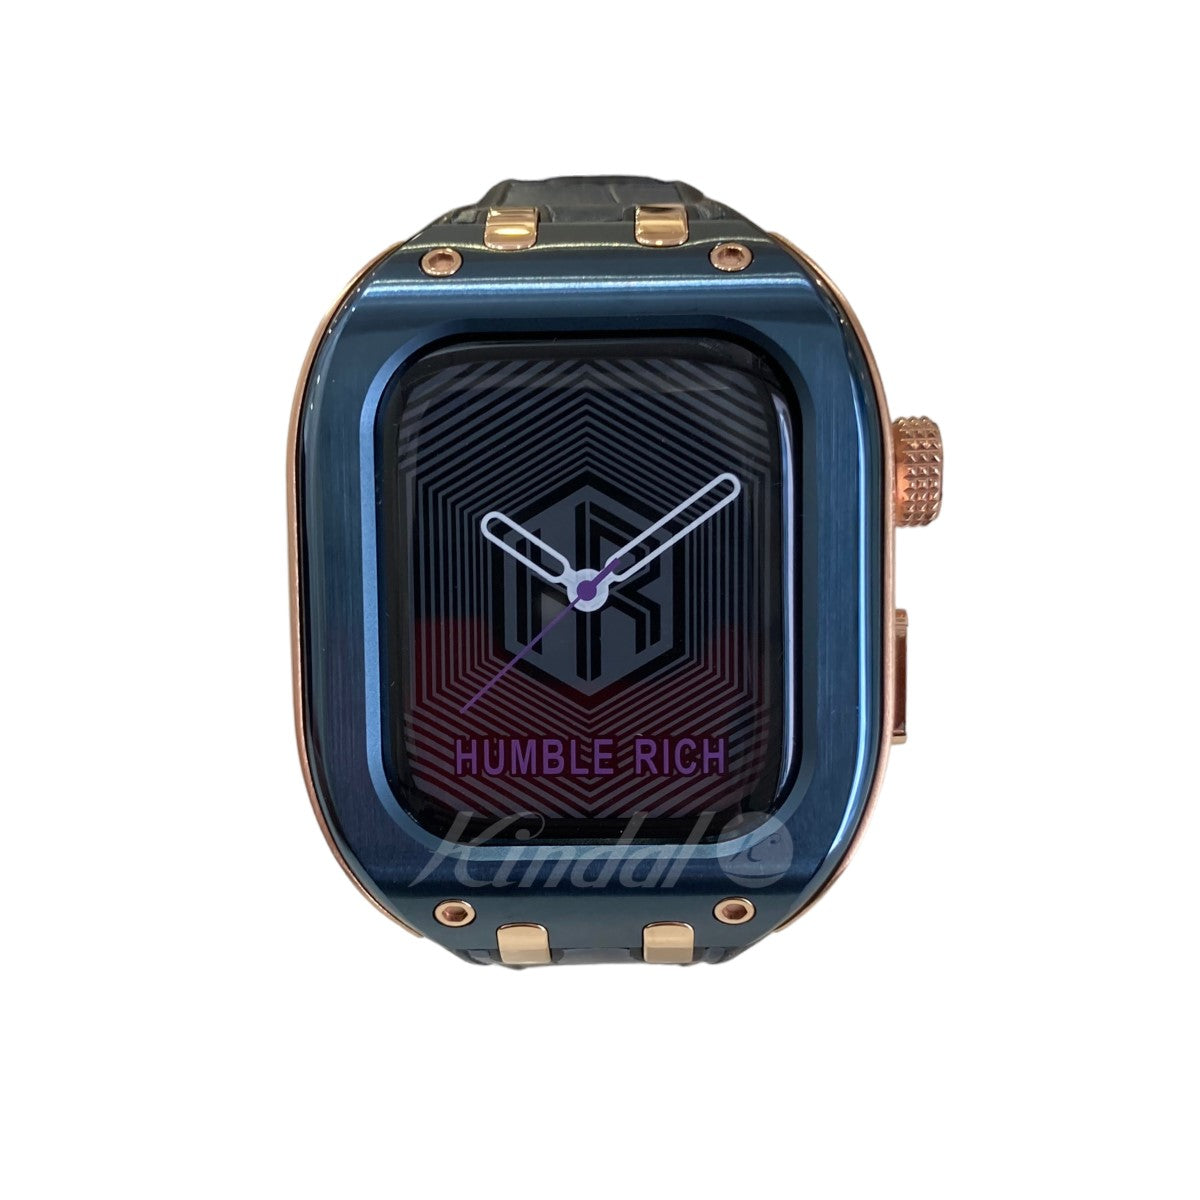 HUMBLE RICH(ハンブルリッチ) Apple Watch ケース ゴールド×ブルー 